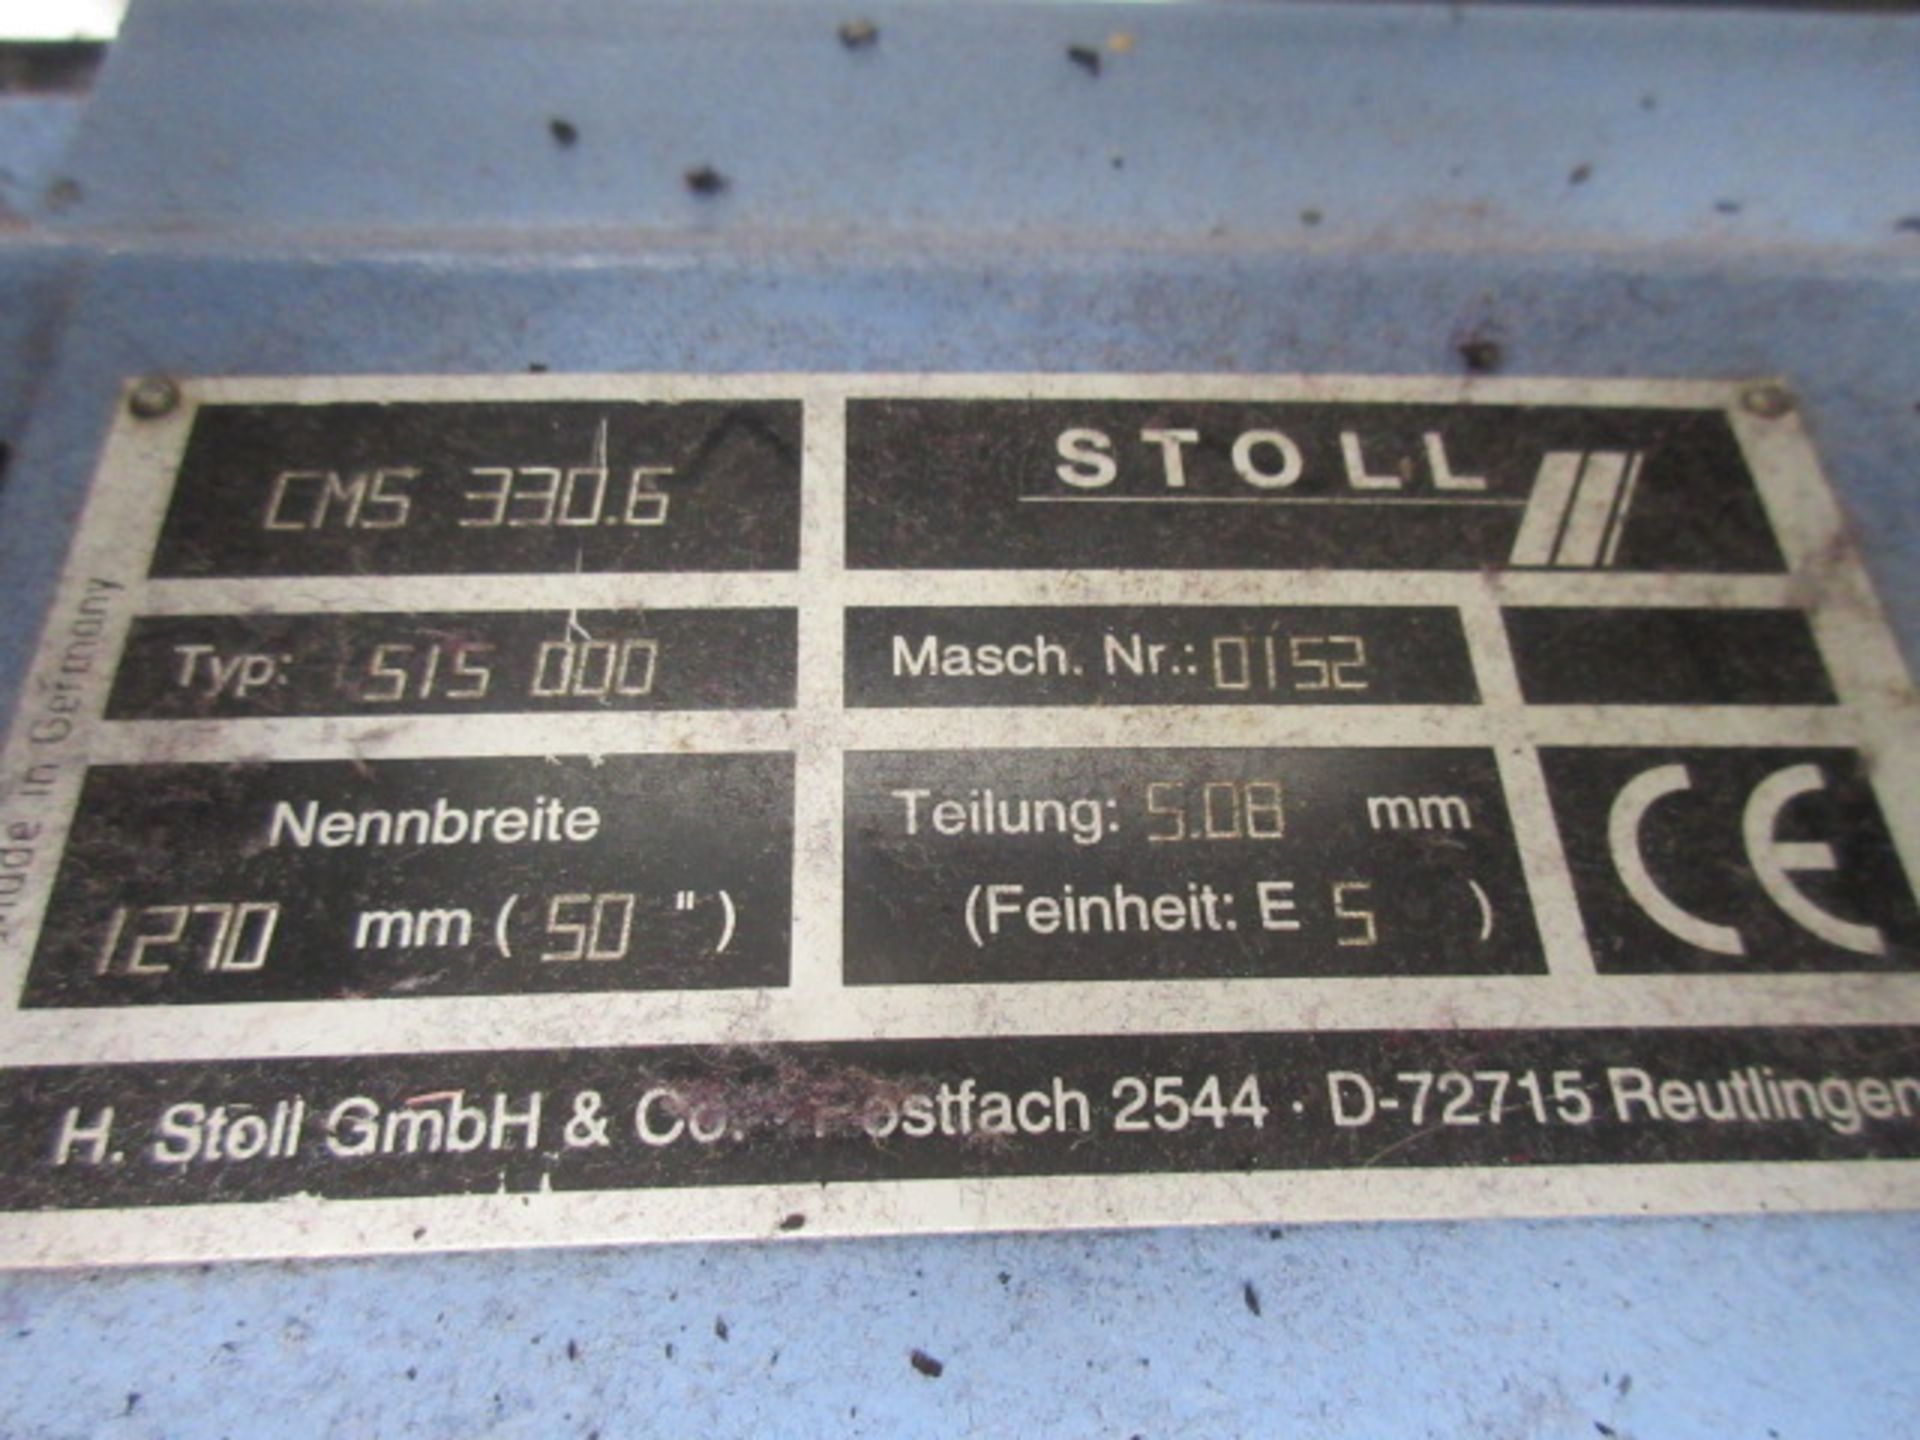 Stoll CMS 330.6 5gg 1270mm Knitting machine (1998) - Image 7 of 7